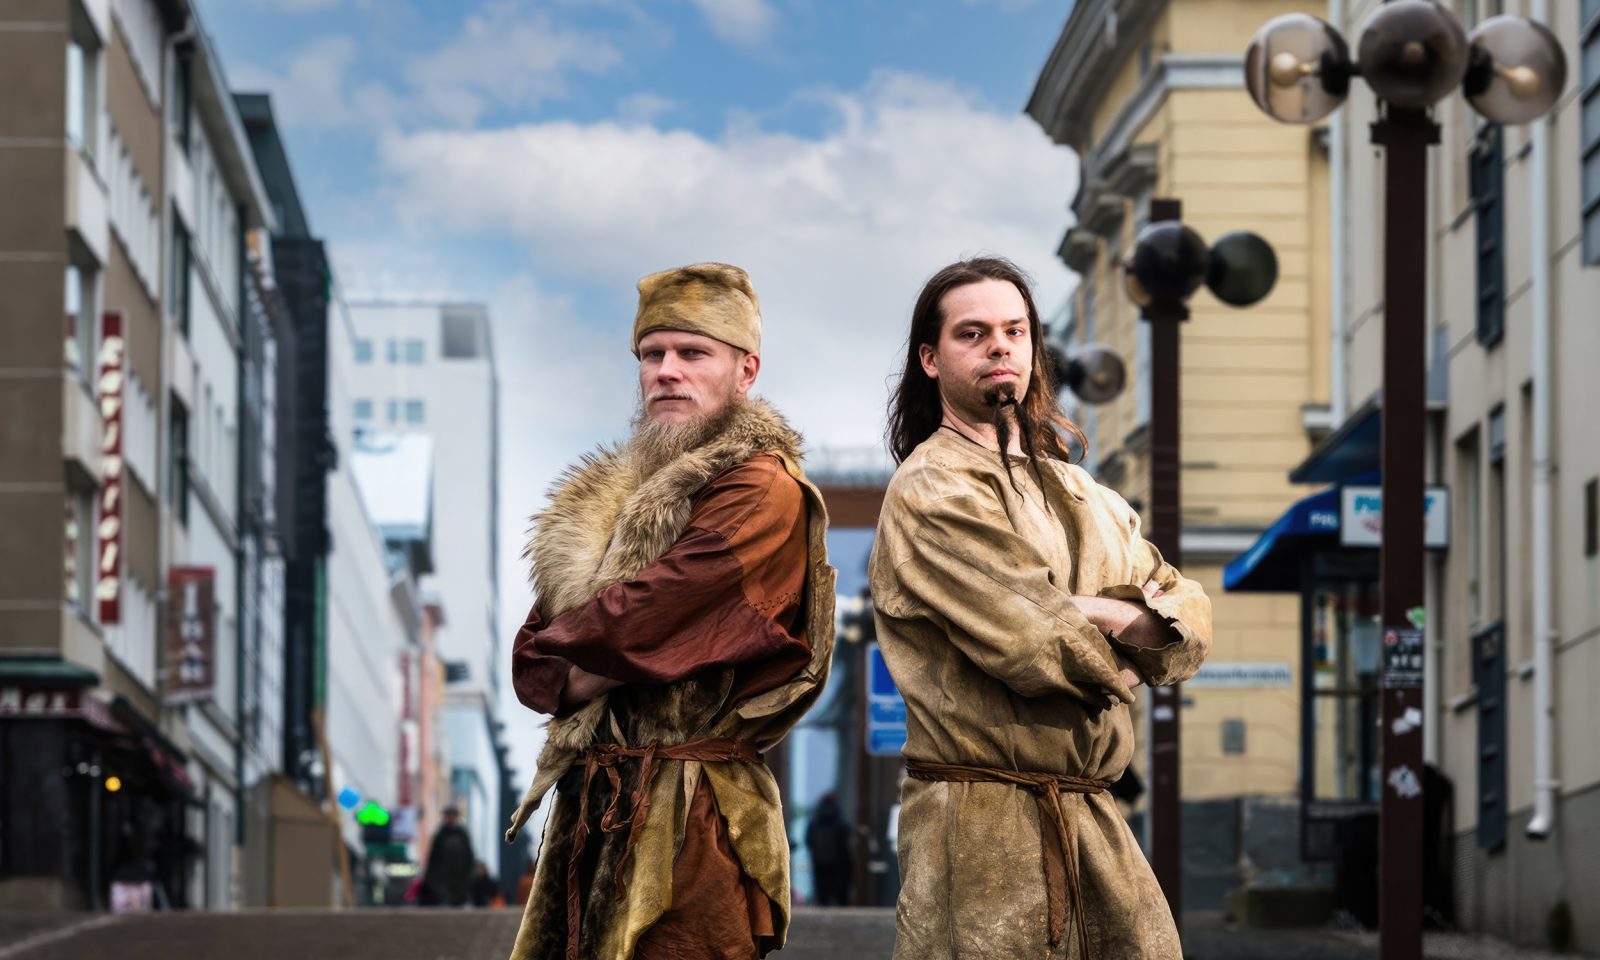 Kaksi kivikauden tyyliin nahkapukuihin pukeutunutta henkilöä seisoo Oulun keskustassa.